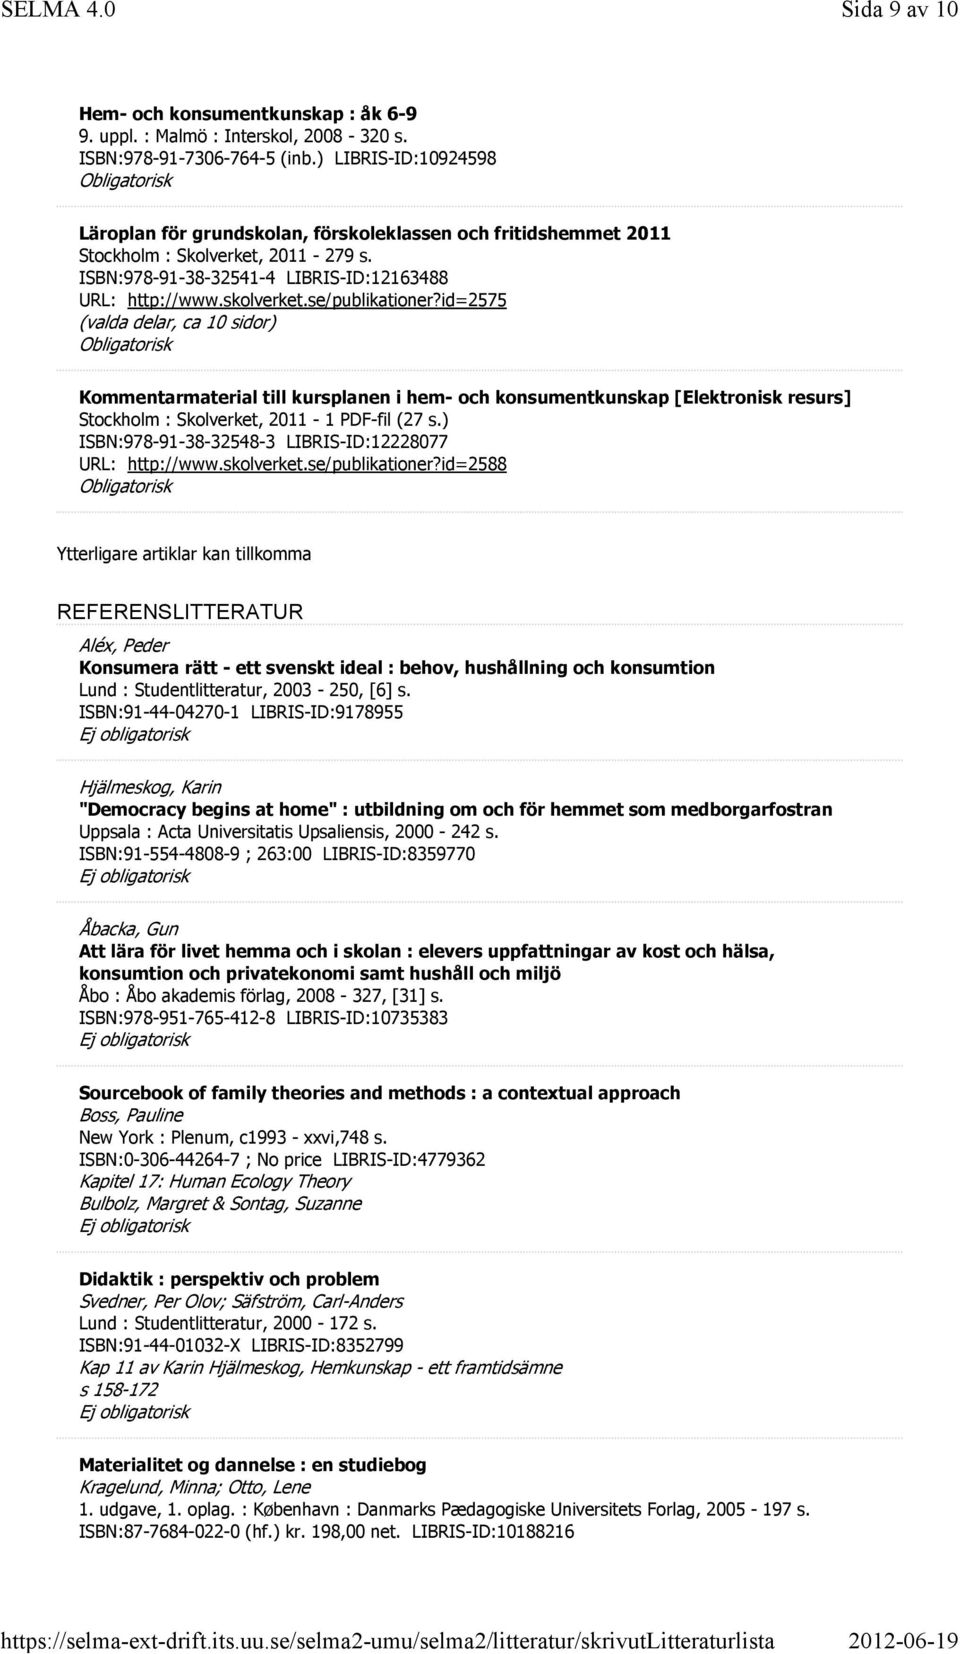 se/publikationer?id=2575 (valda delar, ca 10 sidor) Kommentarmaterial till kursplanen i hem- och konsumentkunskap [Elektronisk resurs] Stockholm : Skolverket, 2011-1 PDF-fil (27 s.